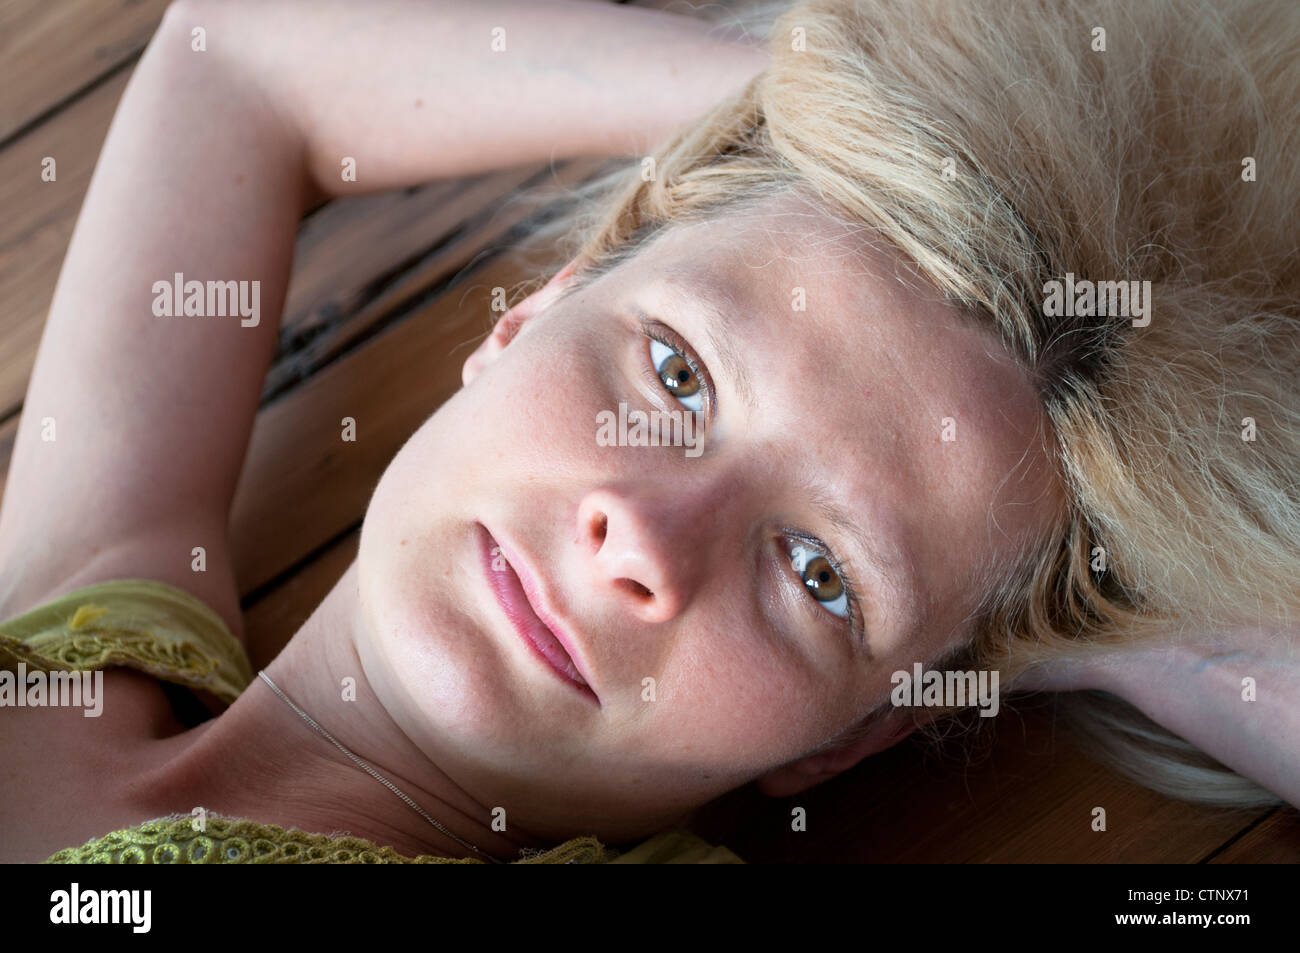 Young woman looking at camera Stock Photo